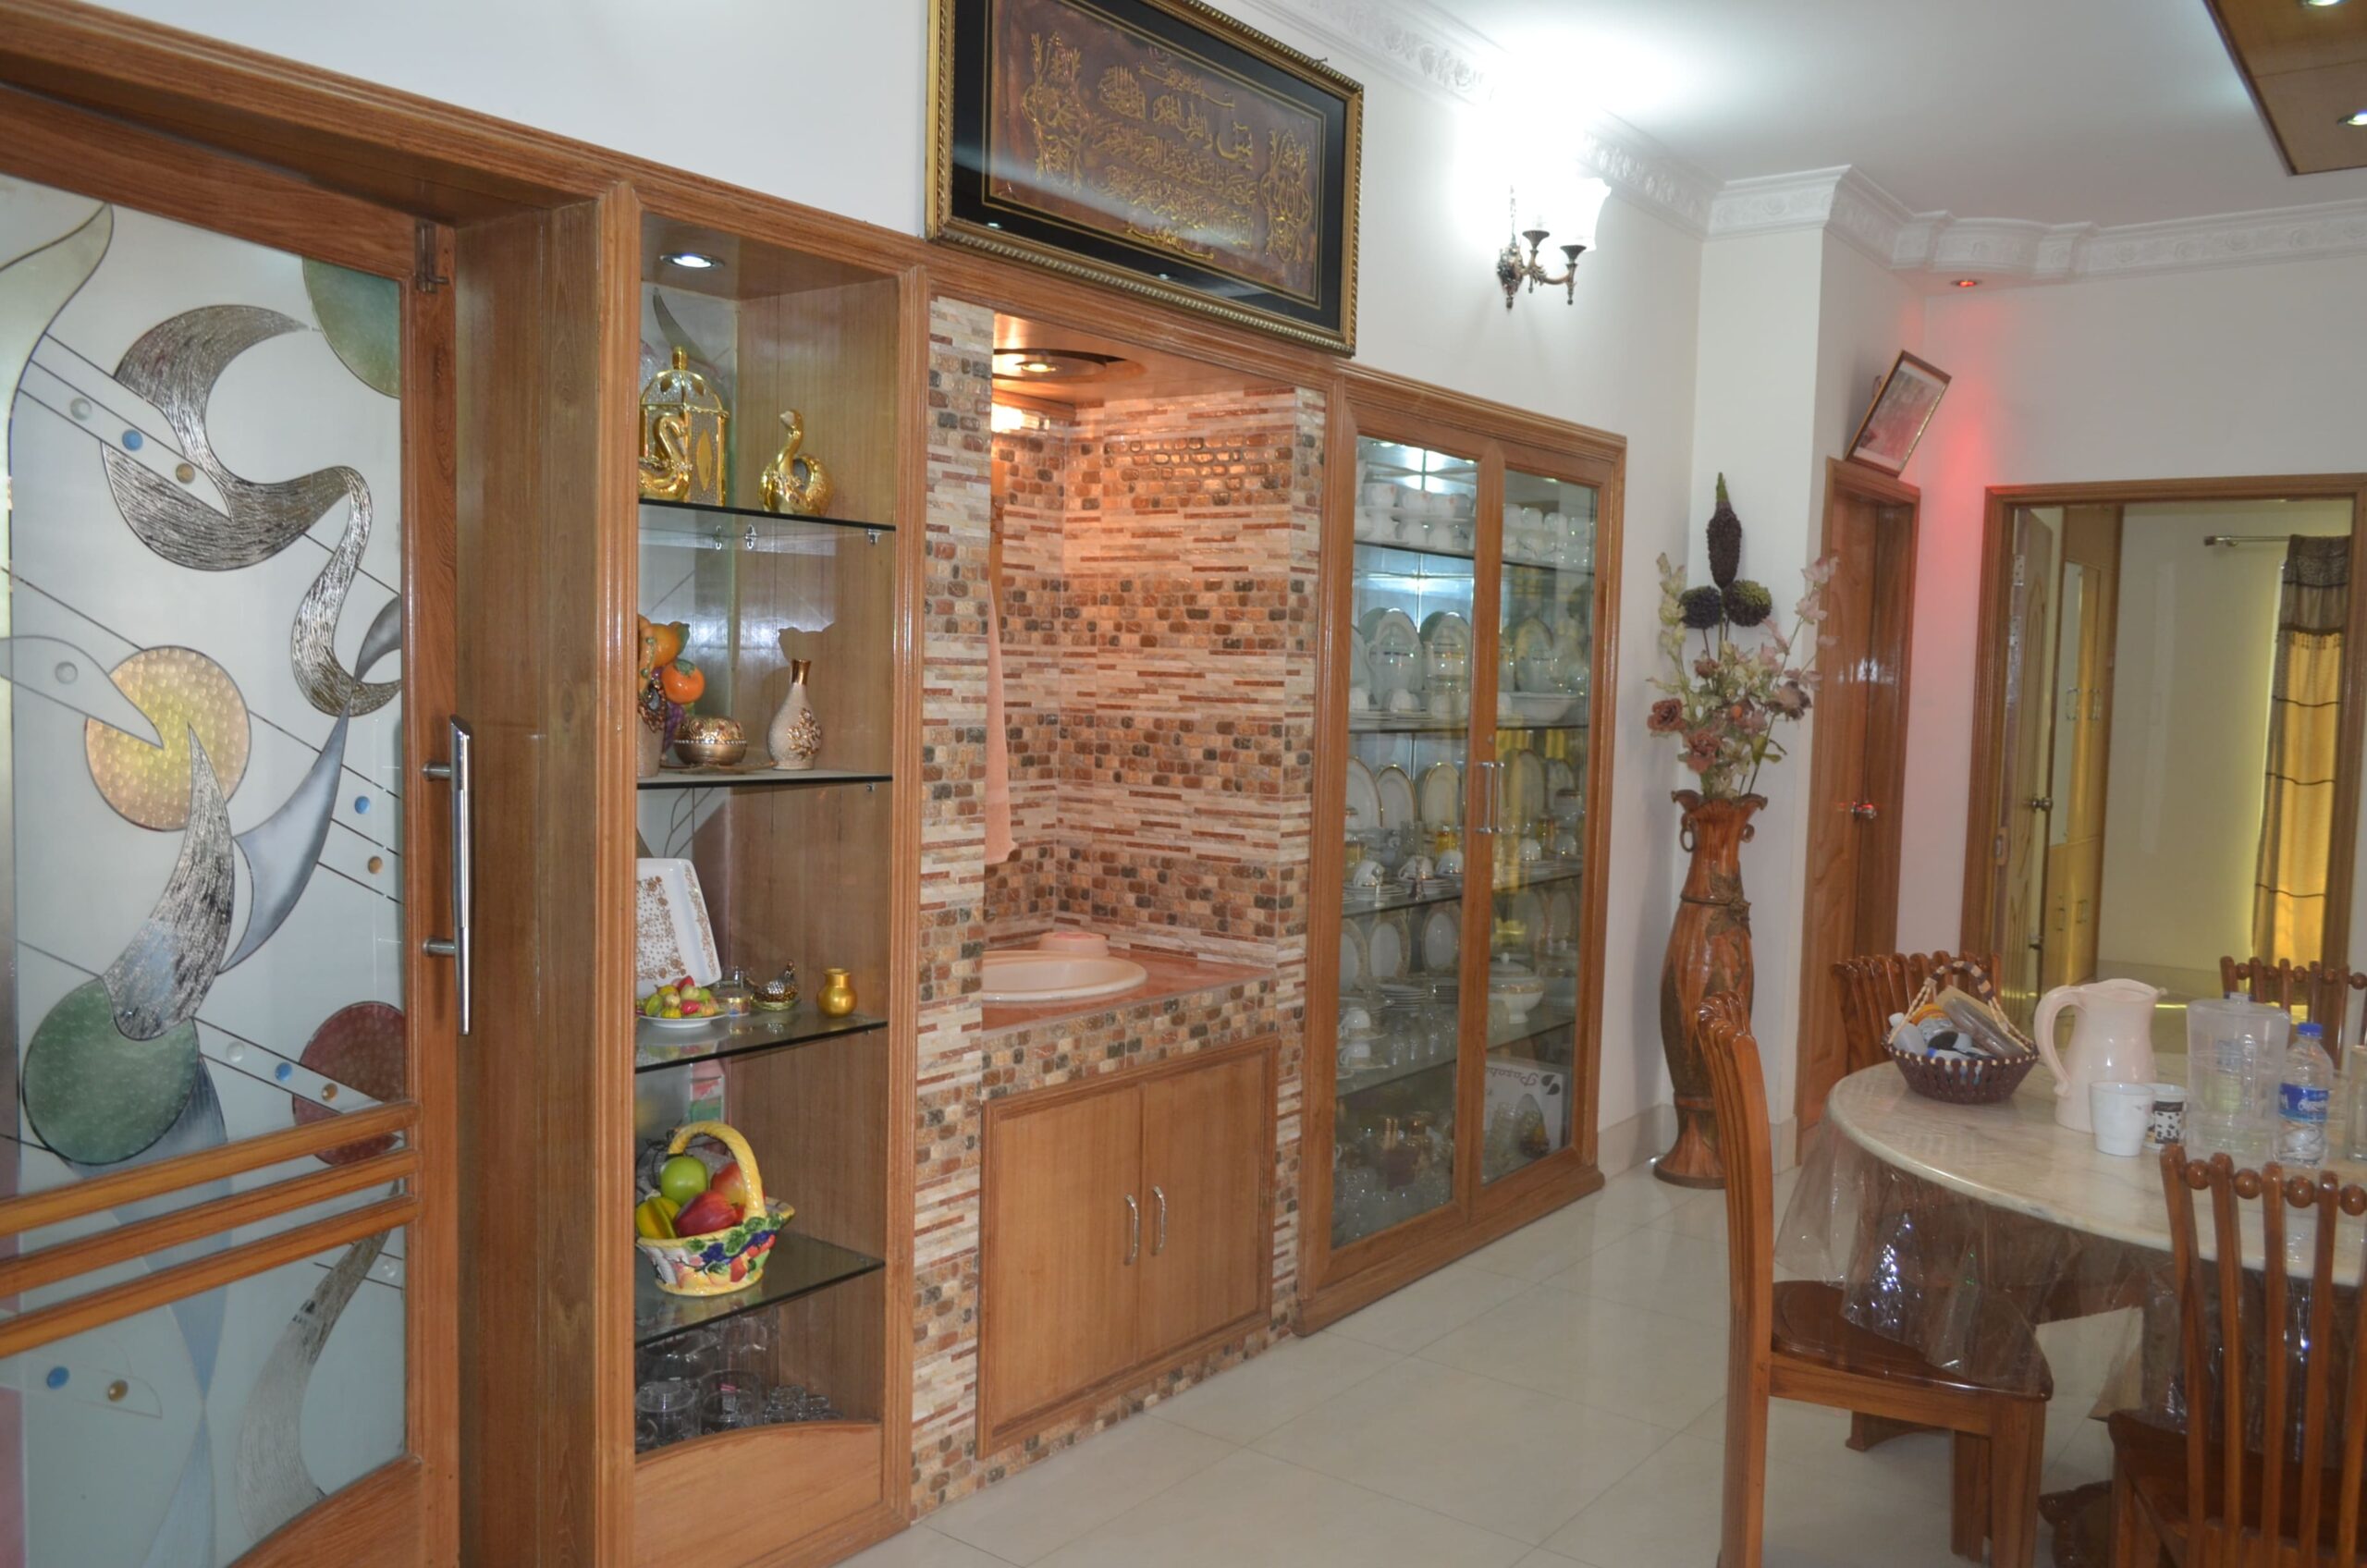 Jahanara Sankar Complete Project Dining Room Interior Design (15)